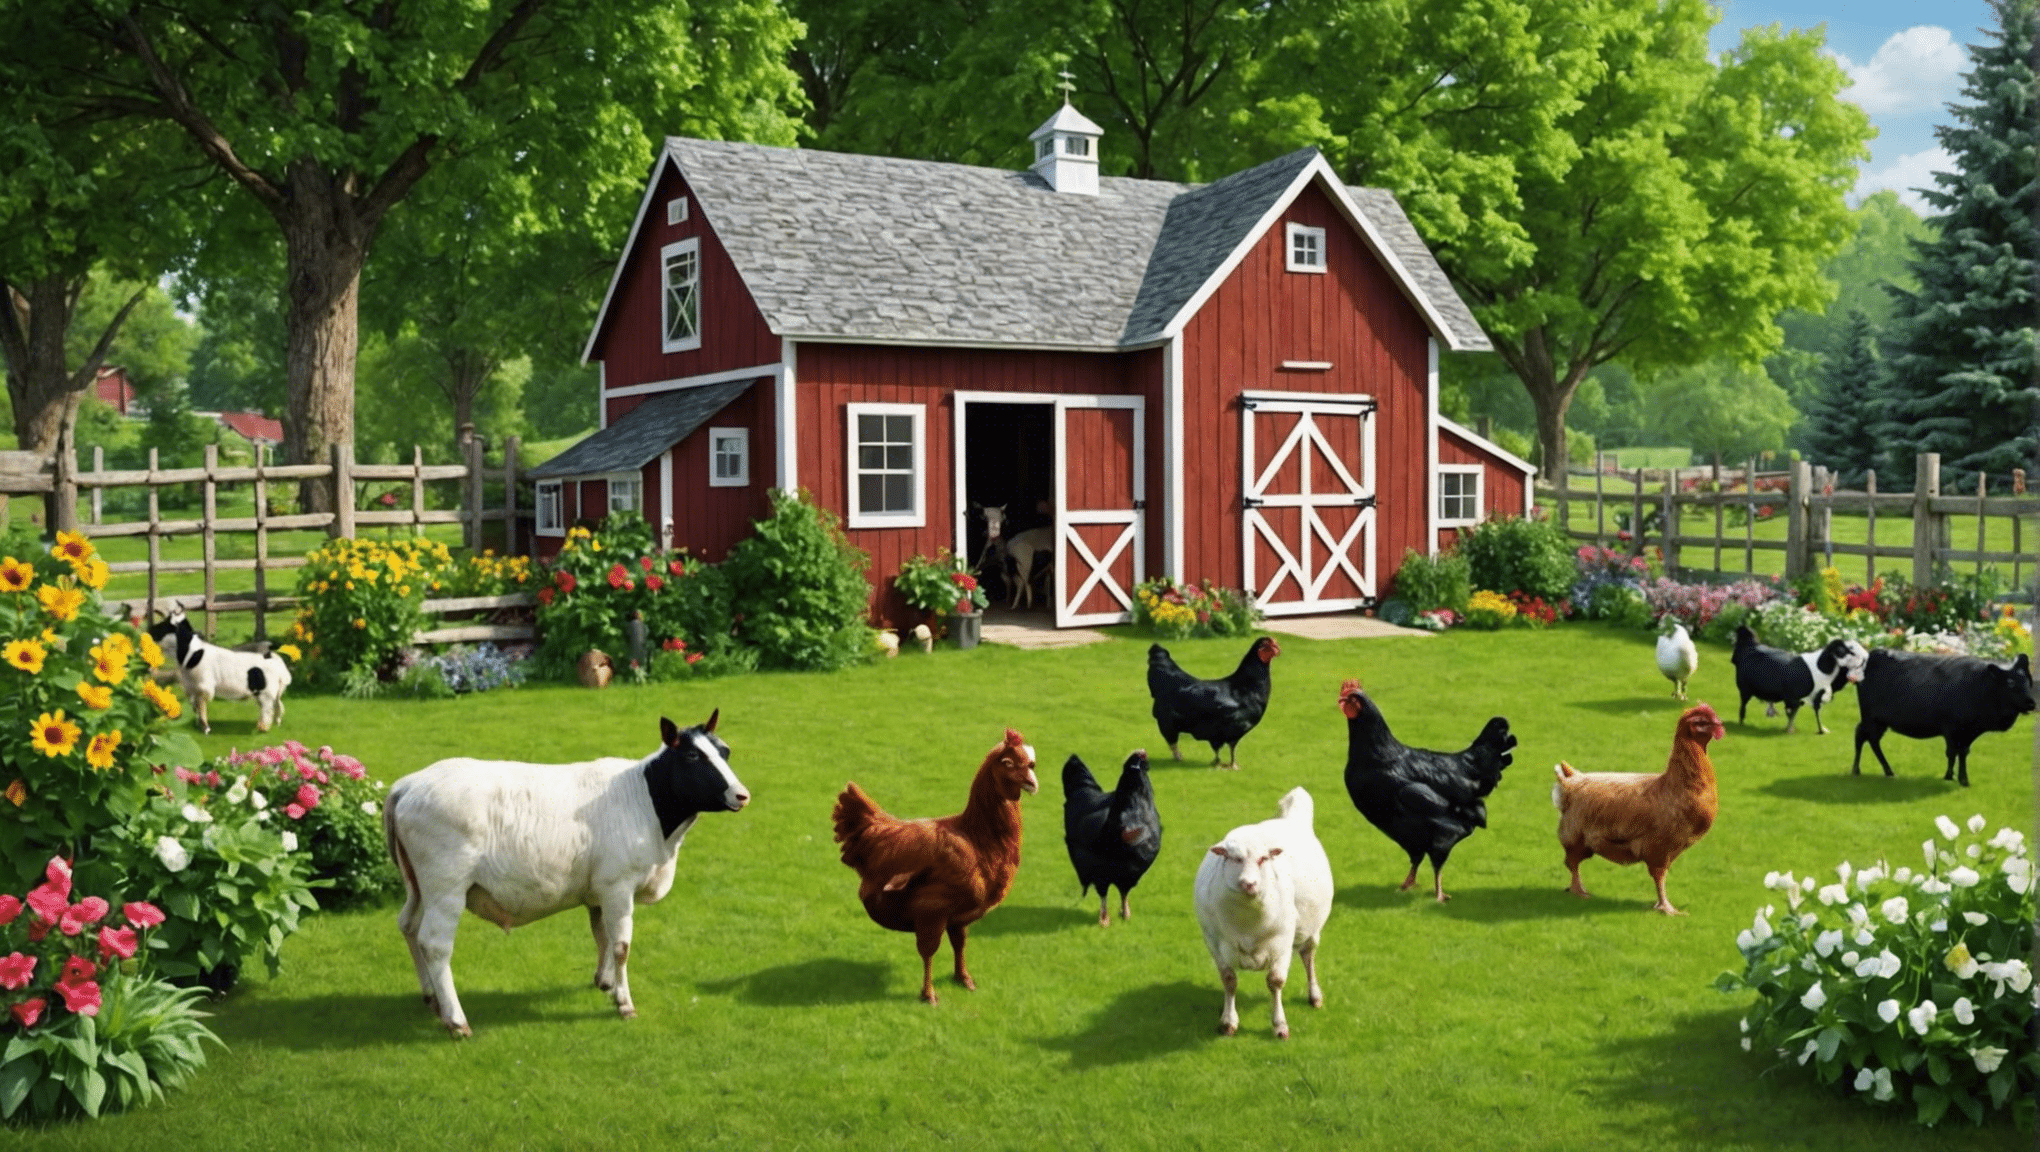 découvrez les avantages d'avoir des animaux de ferme dans votre jardin pour votre maison et votre famille. apprenez à élever, à prendre soin et à apprécier les animaux de la ferme dans votre jardin.